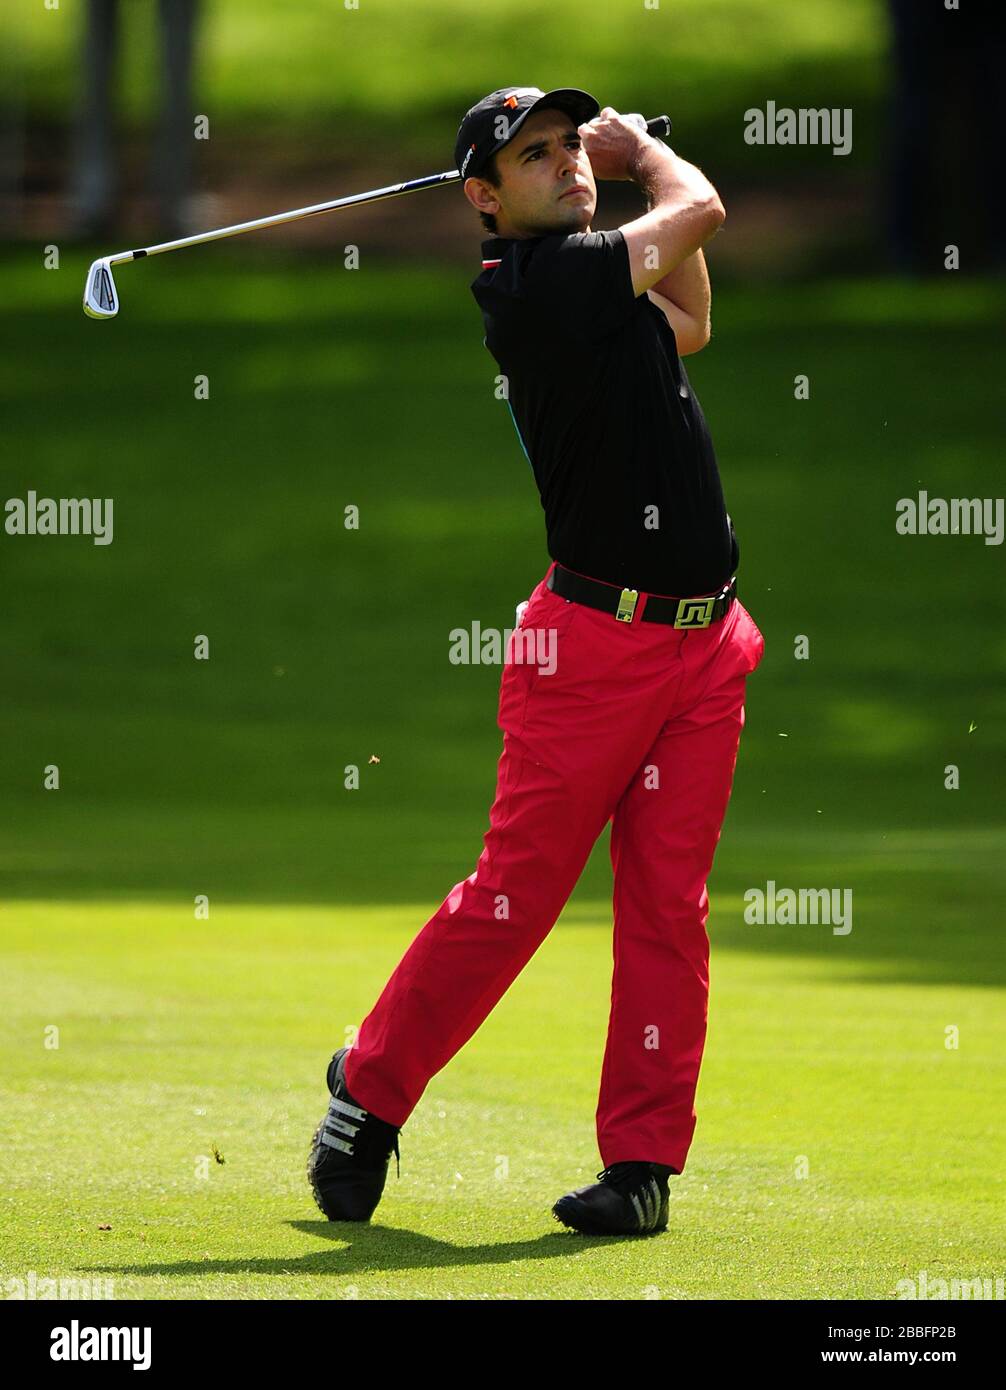 Fabrizio Zanotti del Paraguay durante il quarto giorno del campionato PGA BMW 2013, al Wentworth Golf Club. Foto Stock